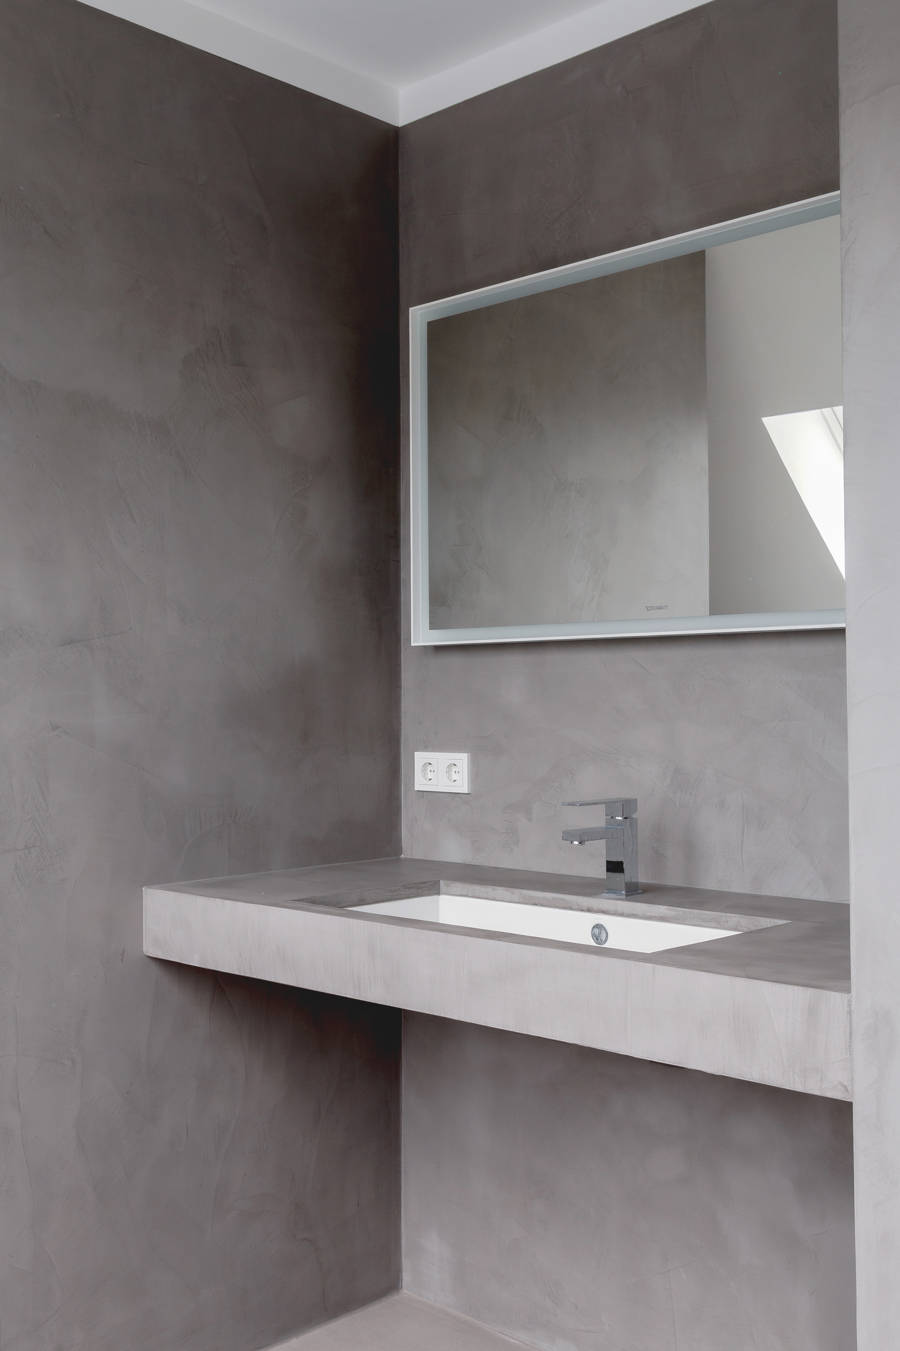 Salle de bain avec béton ciré gris sur les murs, le sol et le comptoir.